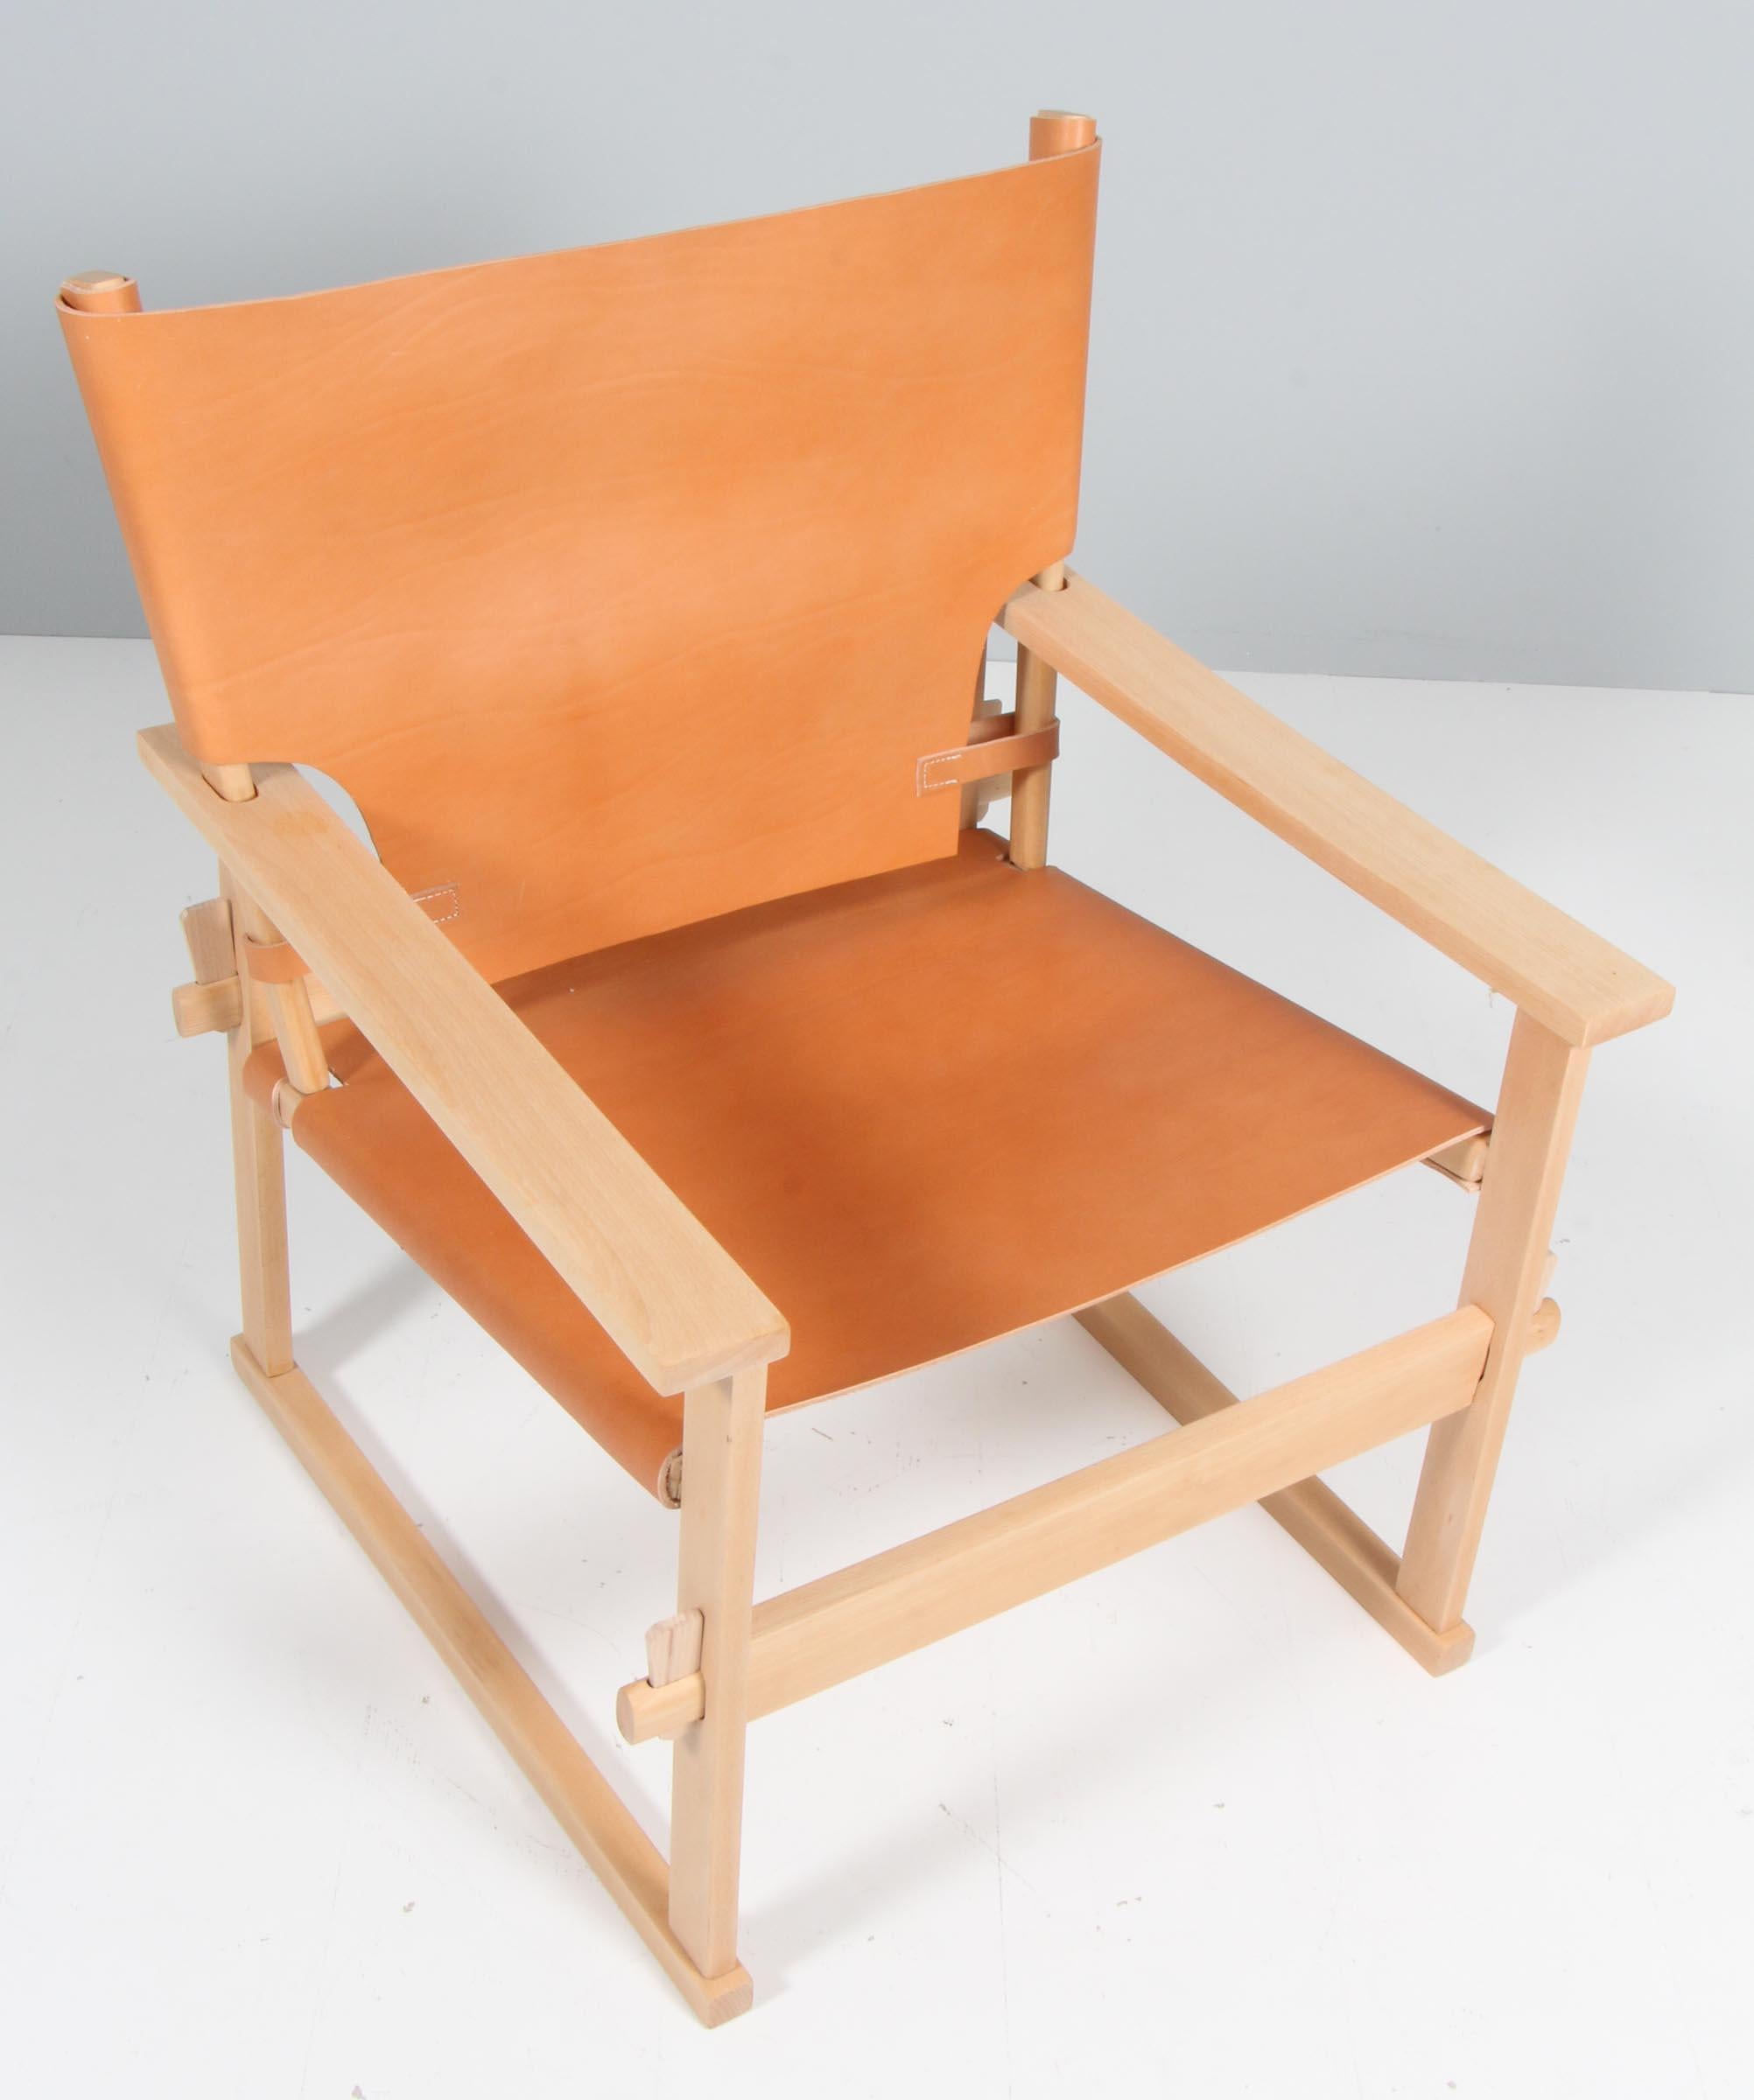 Kai Winding Safari / chaise safari, châssis en hêtre.

Nouvelle sellerie en cuir sellier.

Réalisé par Poul Hundevad.